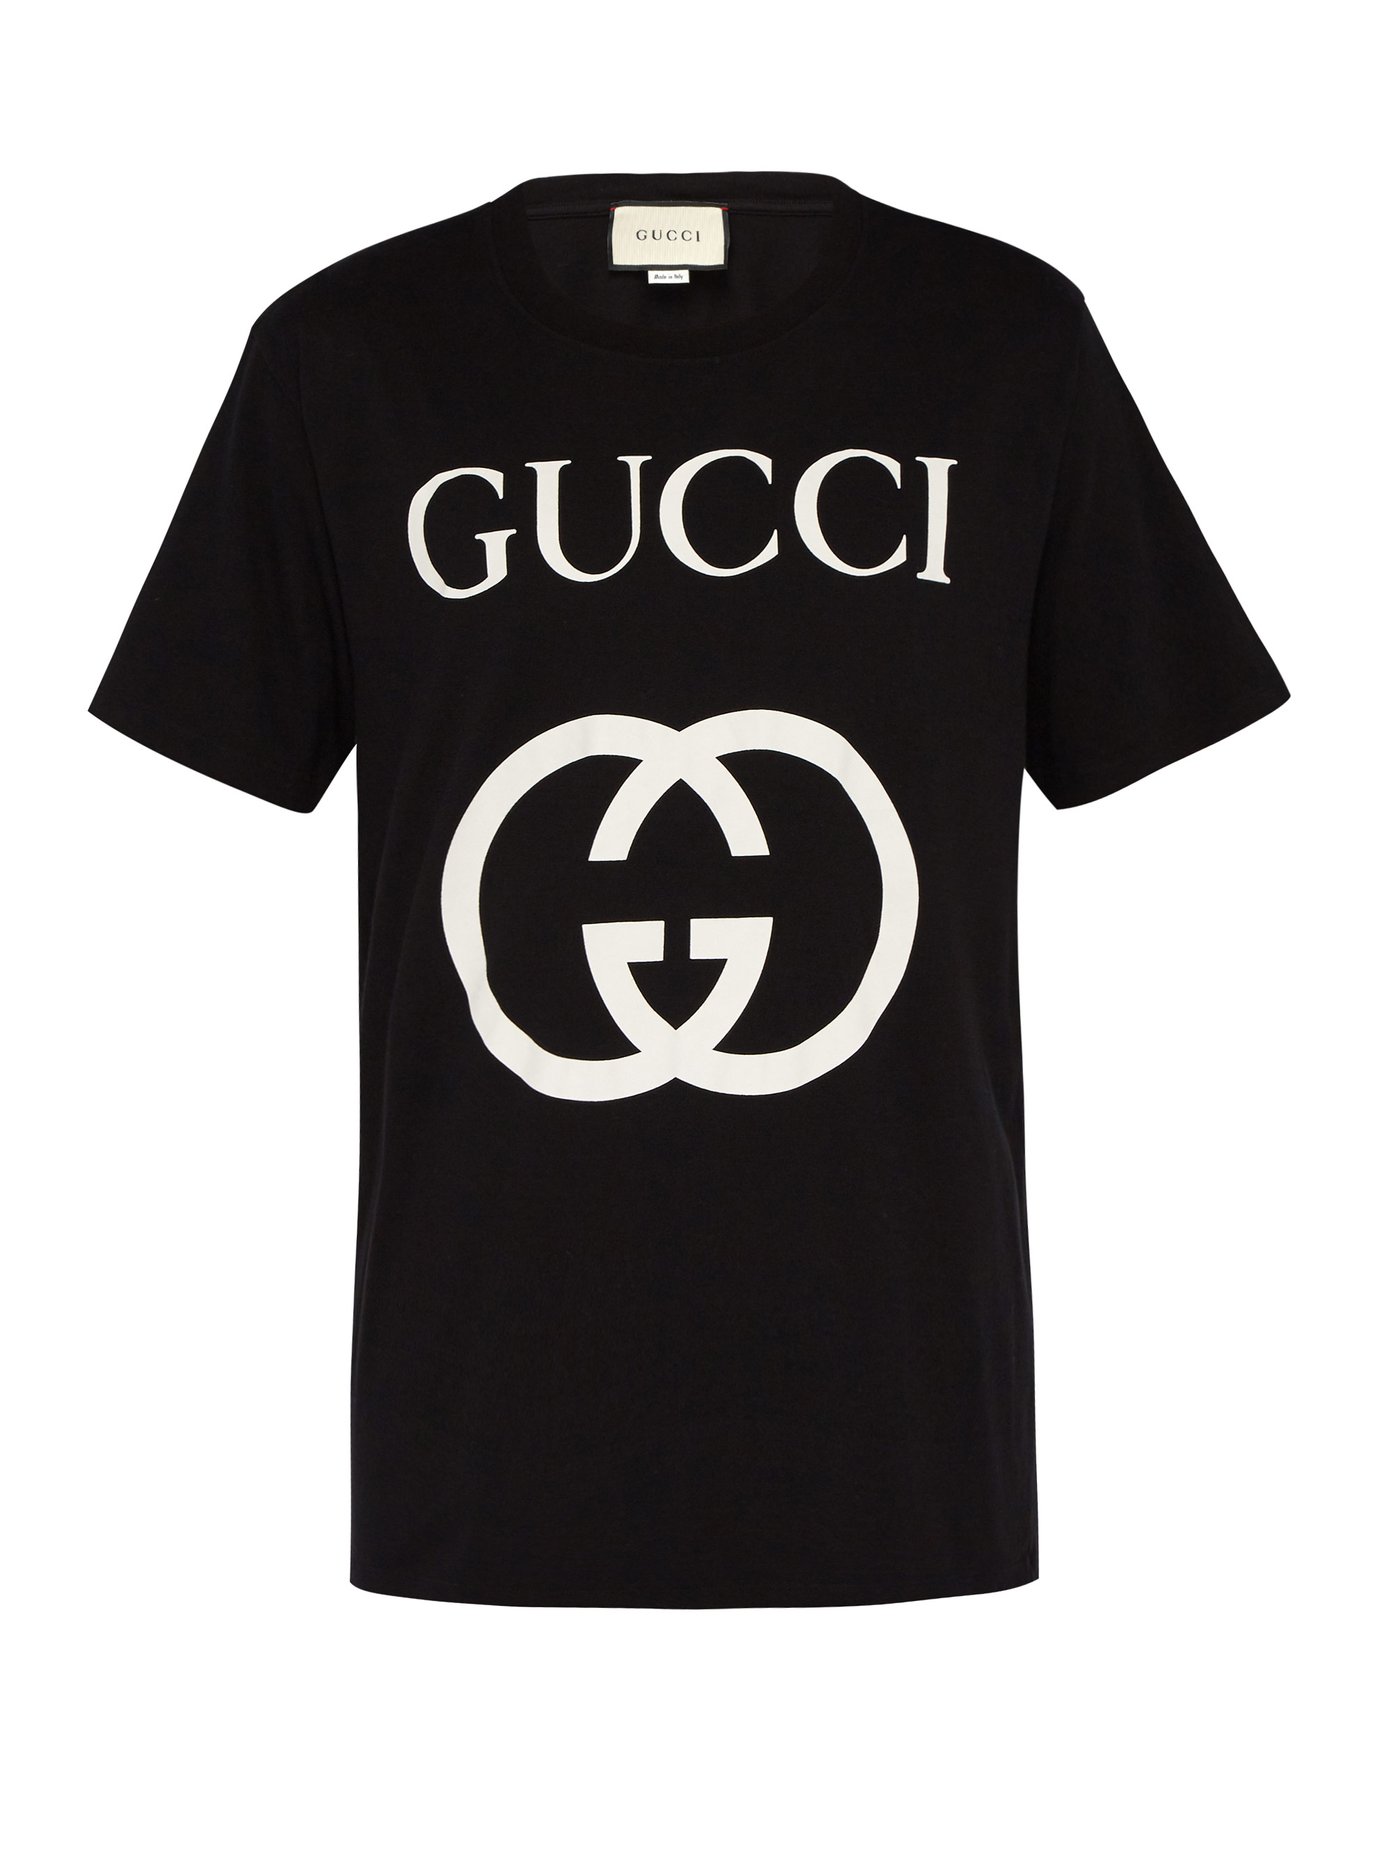 gucci logo tshirt